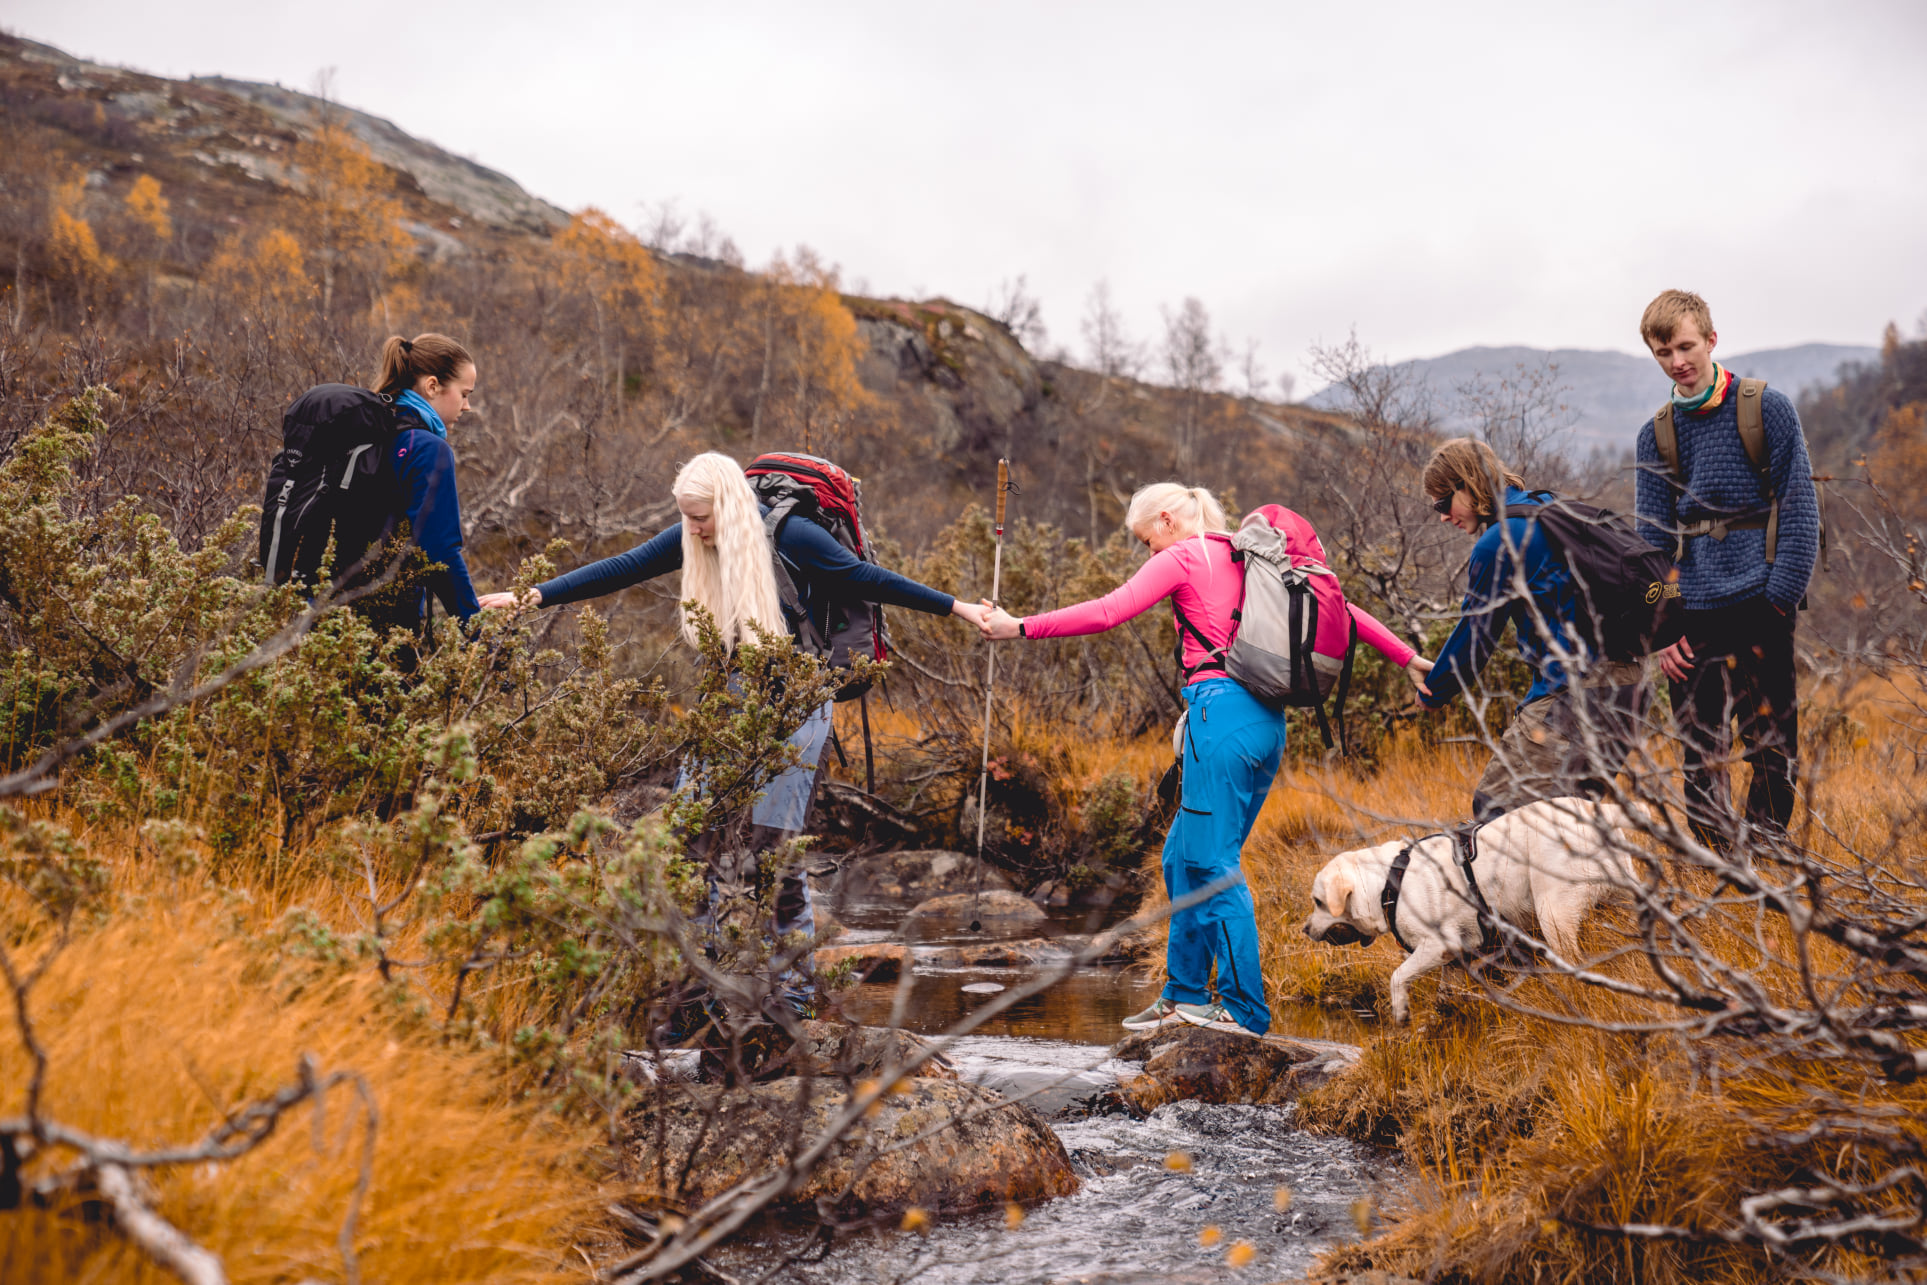 Fem mennesker krysser en elv ute i høstnaturen. Alle holder hender for å hjelpe hverandre over elven. Ei av jentene holder en mobilitetsstokk. I tillegg er den en hvit førerhund med på bildet. 